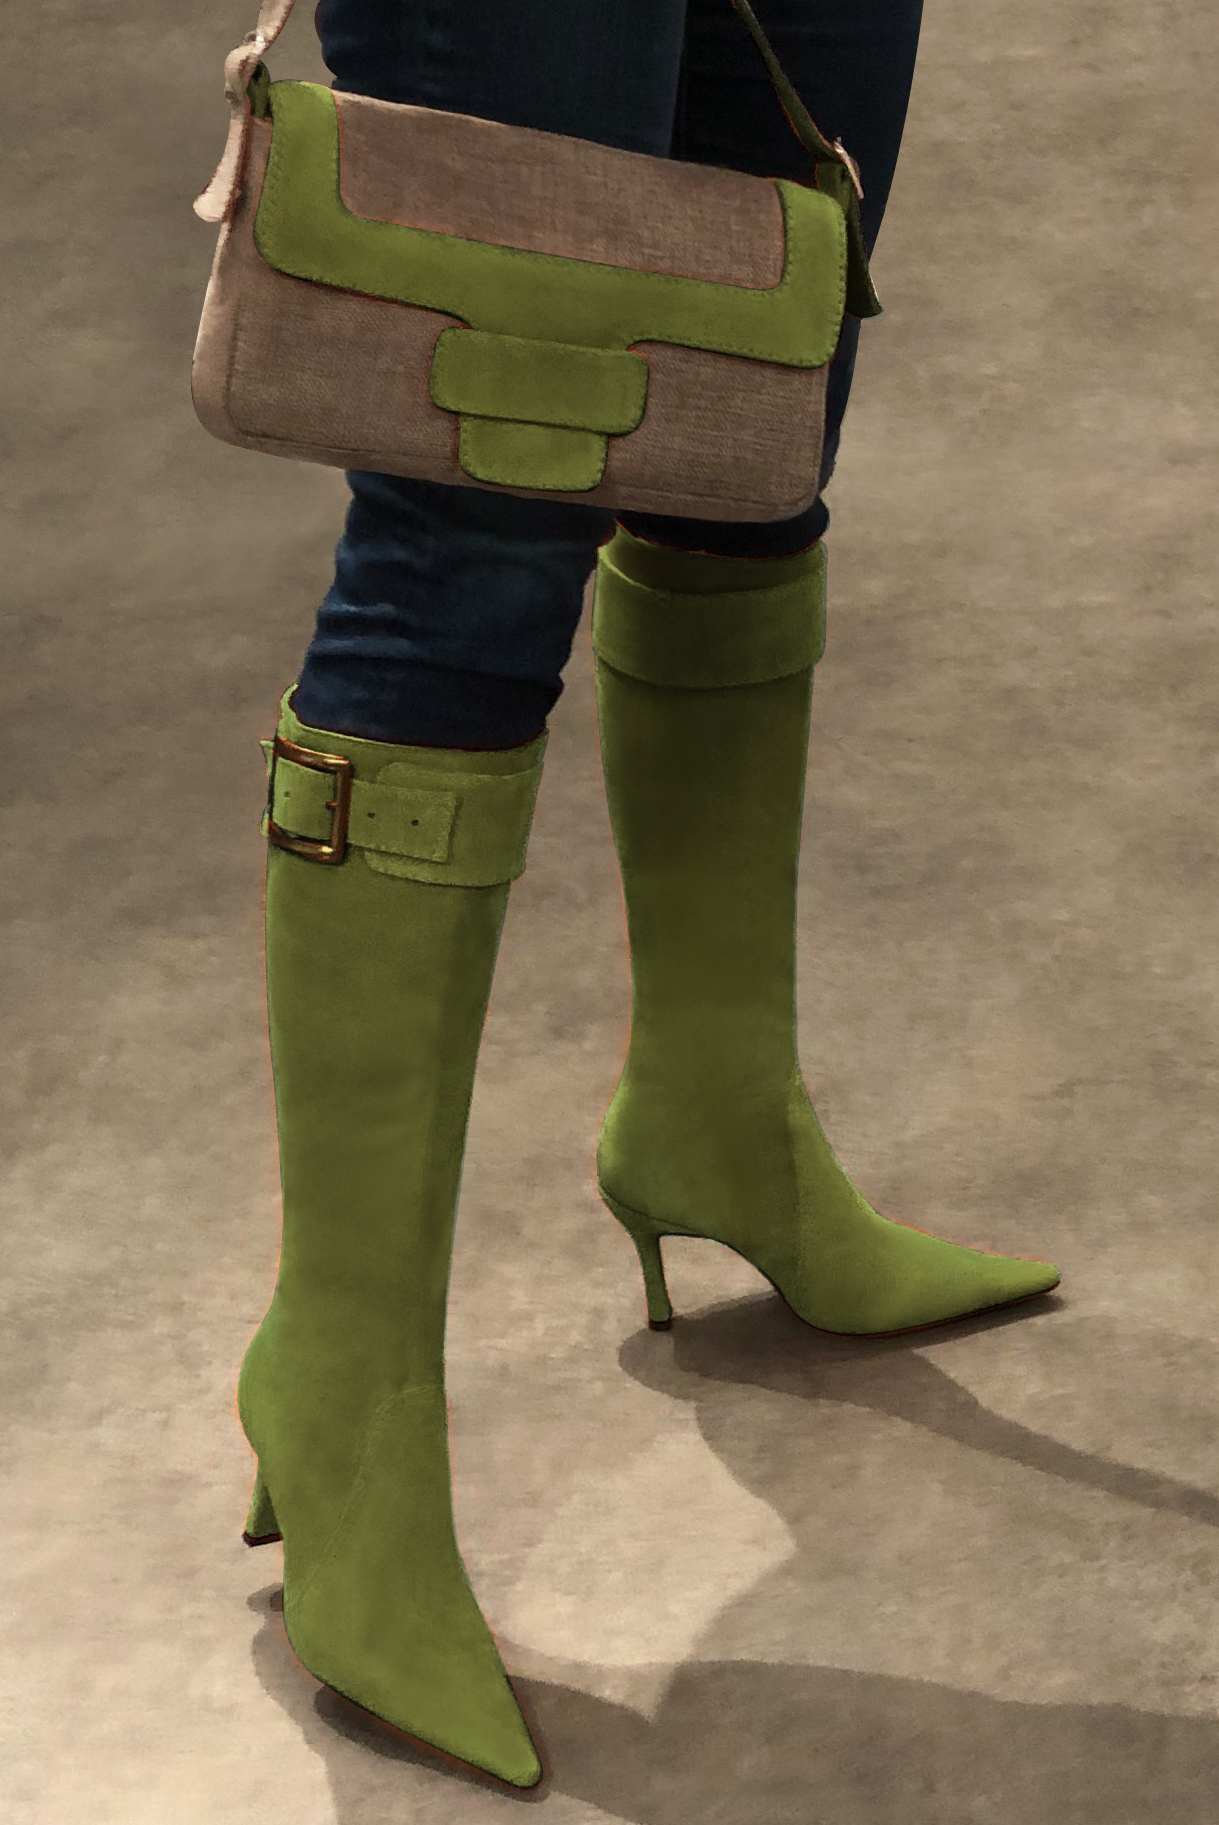 Caramel brown and pistachio green women's dress handbag, matching pumps and belts. Worn view - Florence KOOIJMAN